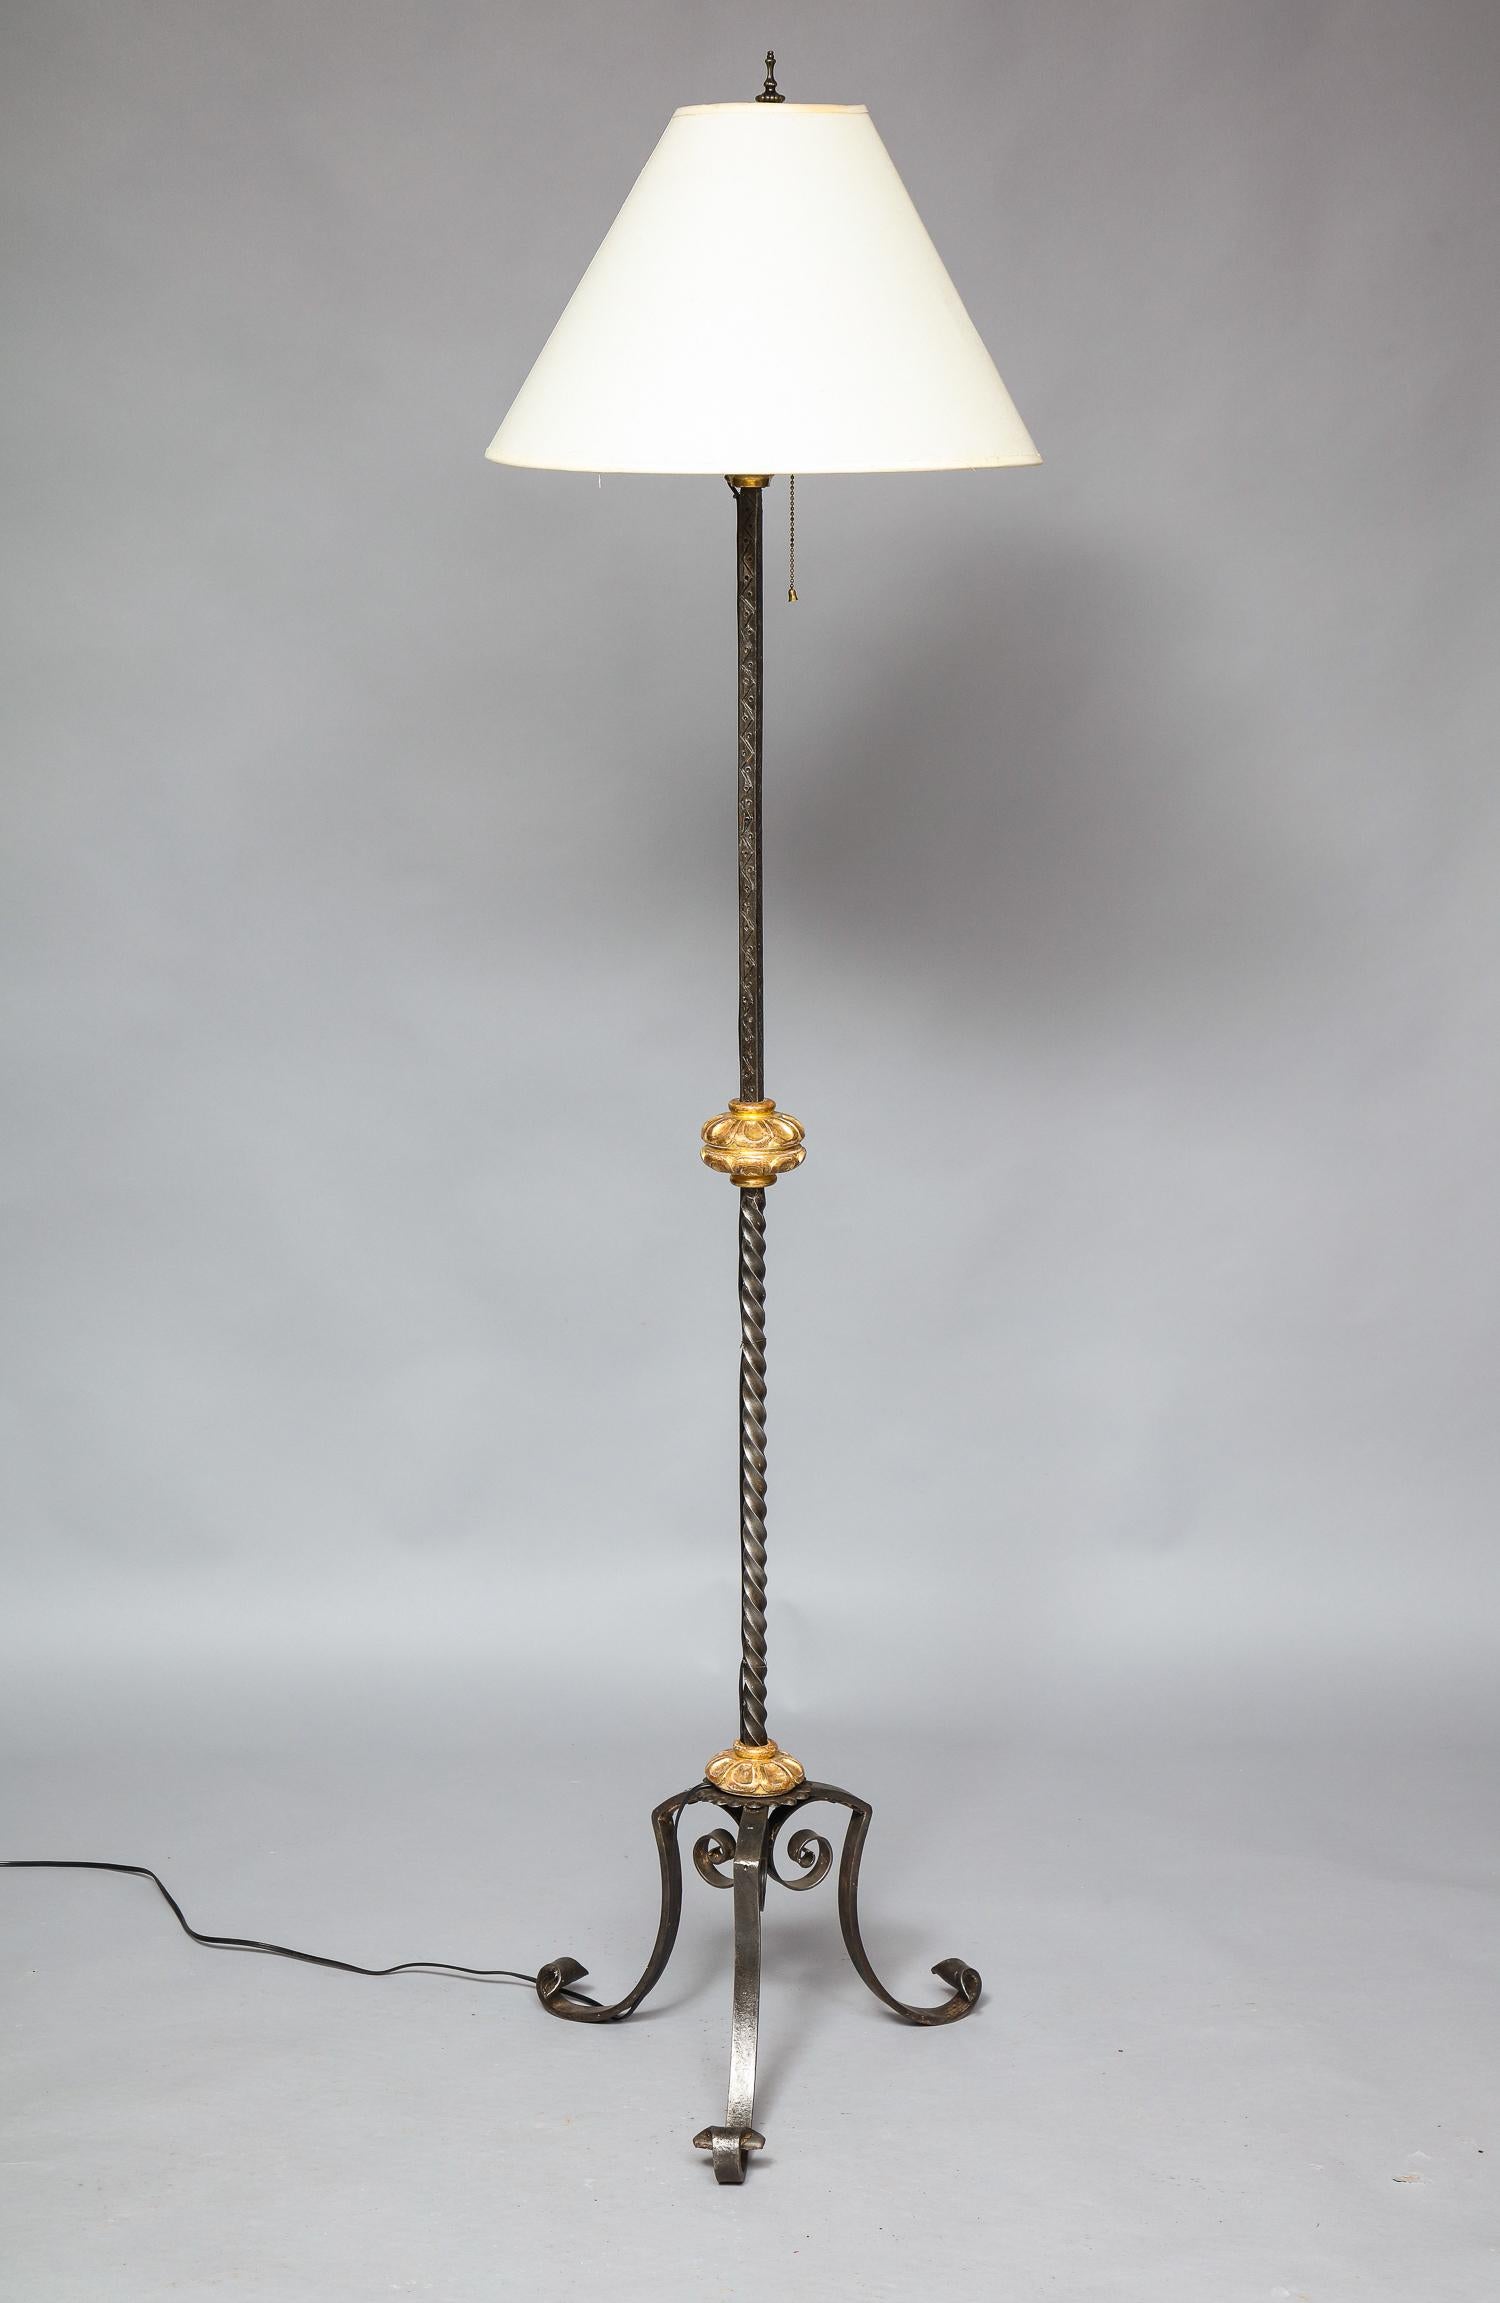 Beau lampadaire en fer forgé de style baroque du début du 20e siècle, avec cols sculptés et dorés à l'eau, le fût en torsade d'orge avec décor gravé, reposant sur des pieds en fer forgé à volutes, l'ensemble présentant une agréable surface patinée